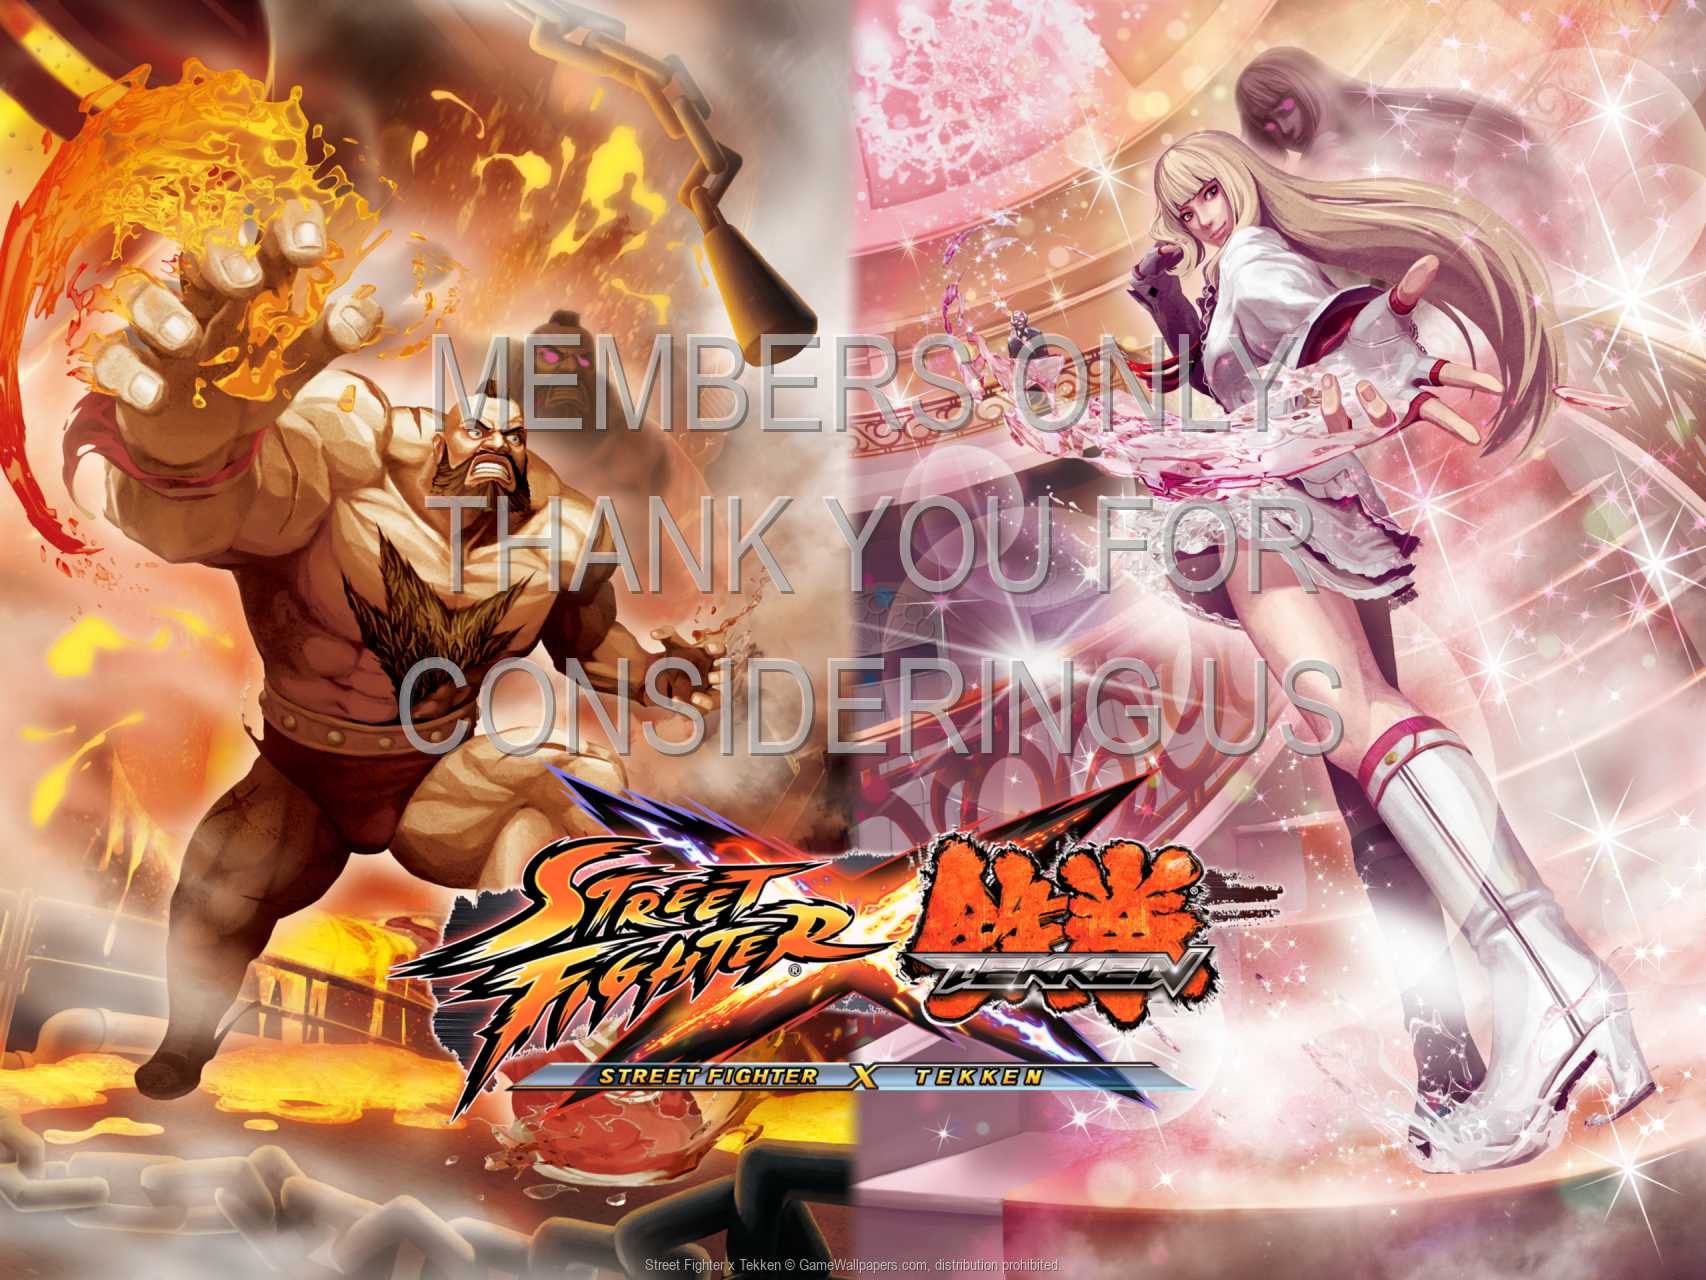 Street Fighter x Tekken 720p%20Horizontal Mobile wallpaper or background 02